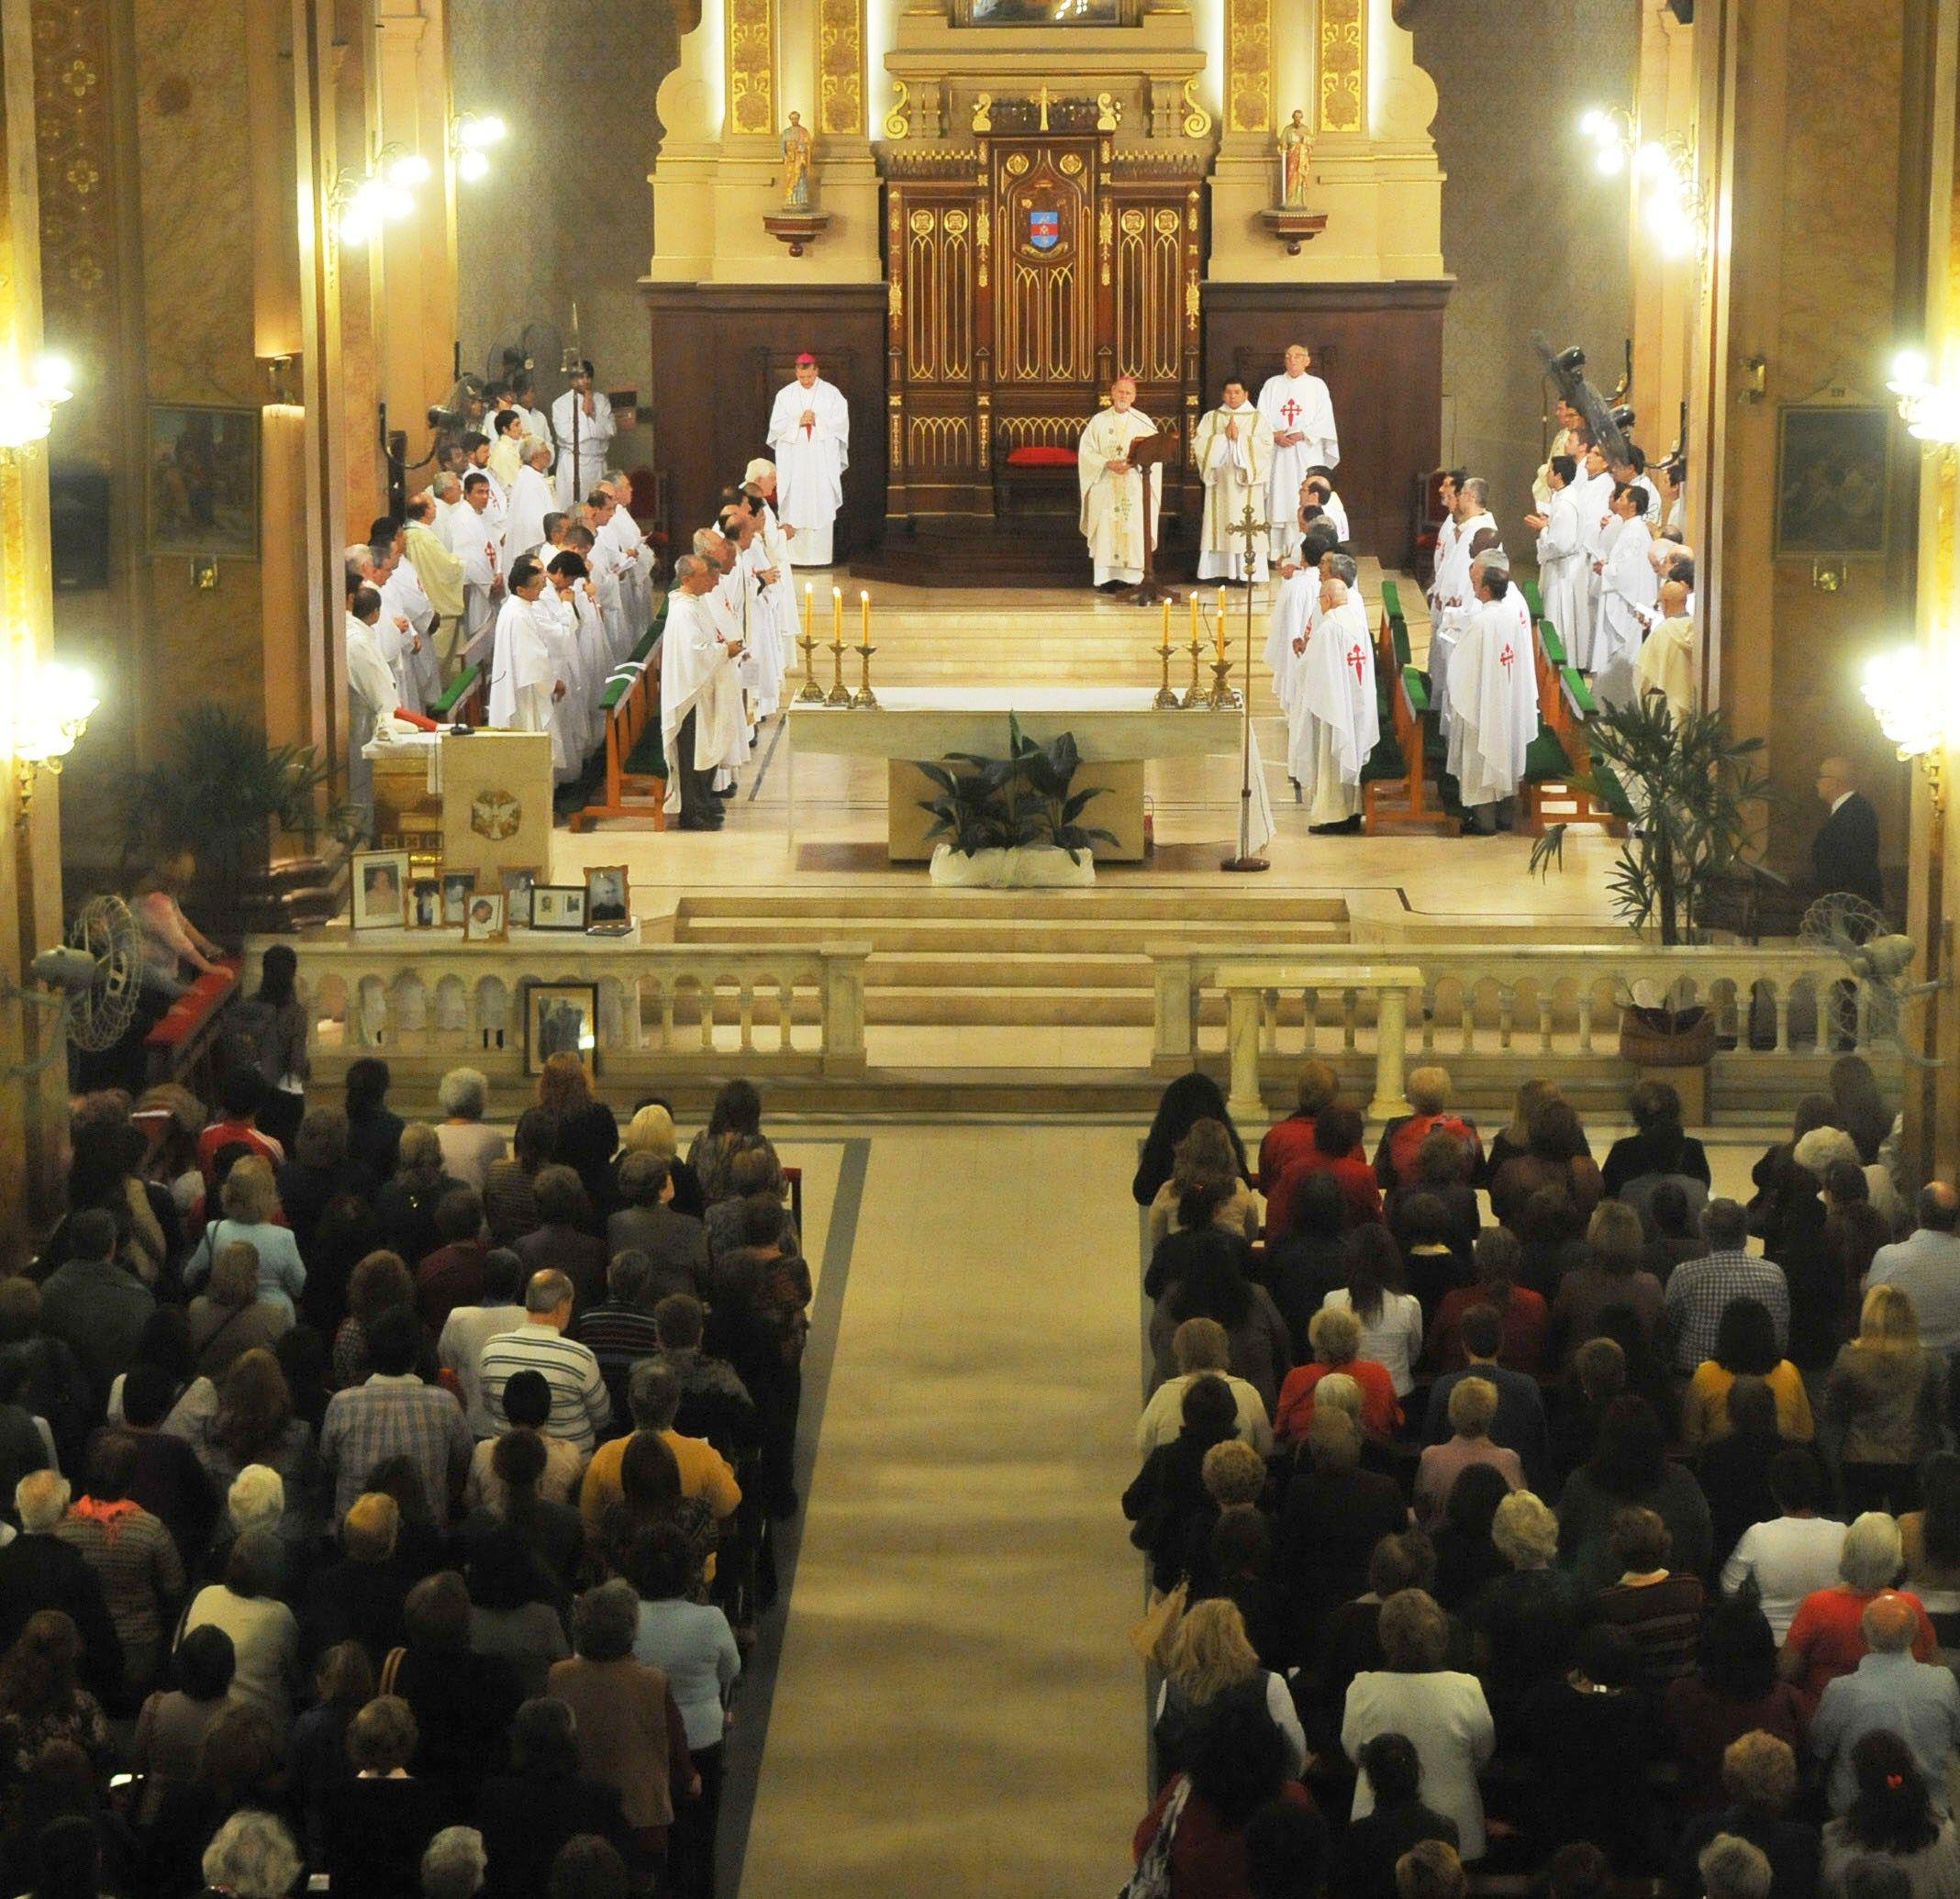 PROGRAMA DE ACTIVIDADES- con el Domingo de Ramos las comunidades religiosas comienzan a vivir la Semana Santa